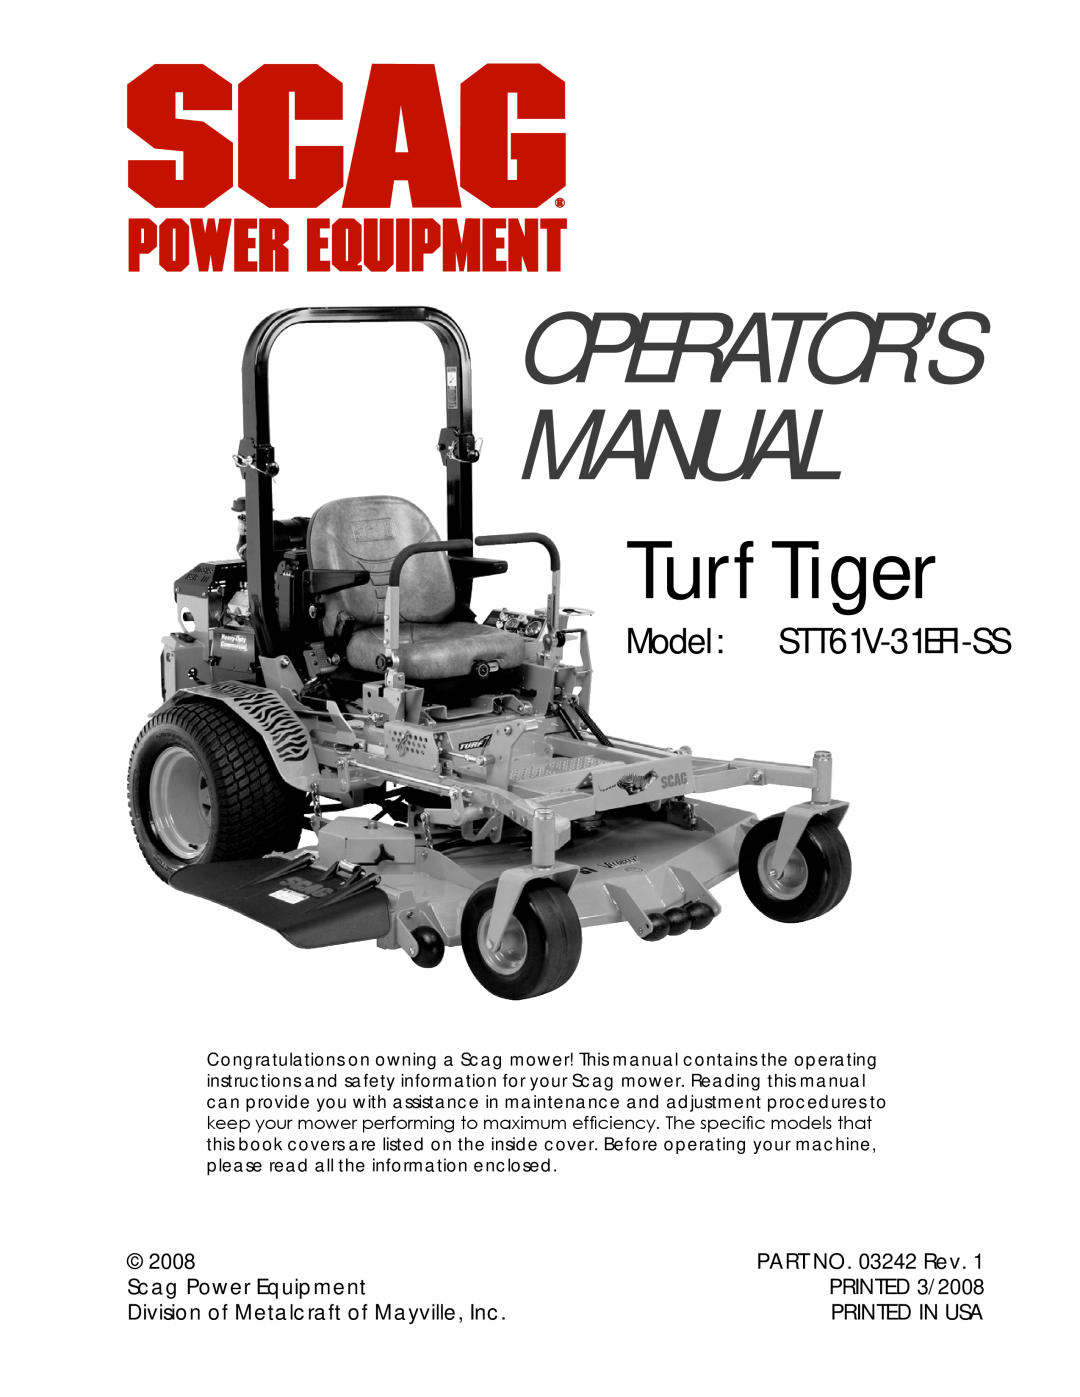 Scag Power Equipment STT61V-31EFI-SS manual PART NO. 03242 Rev, Scag Power Equipment, PRINTED 3/2008, Printed In Usa 